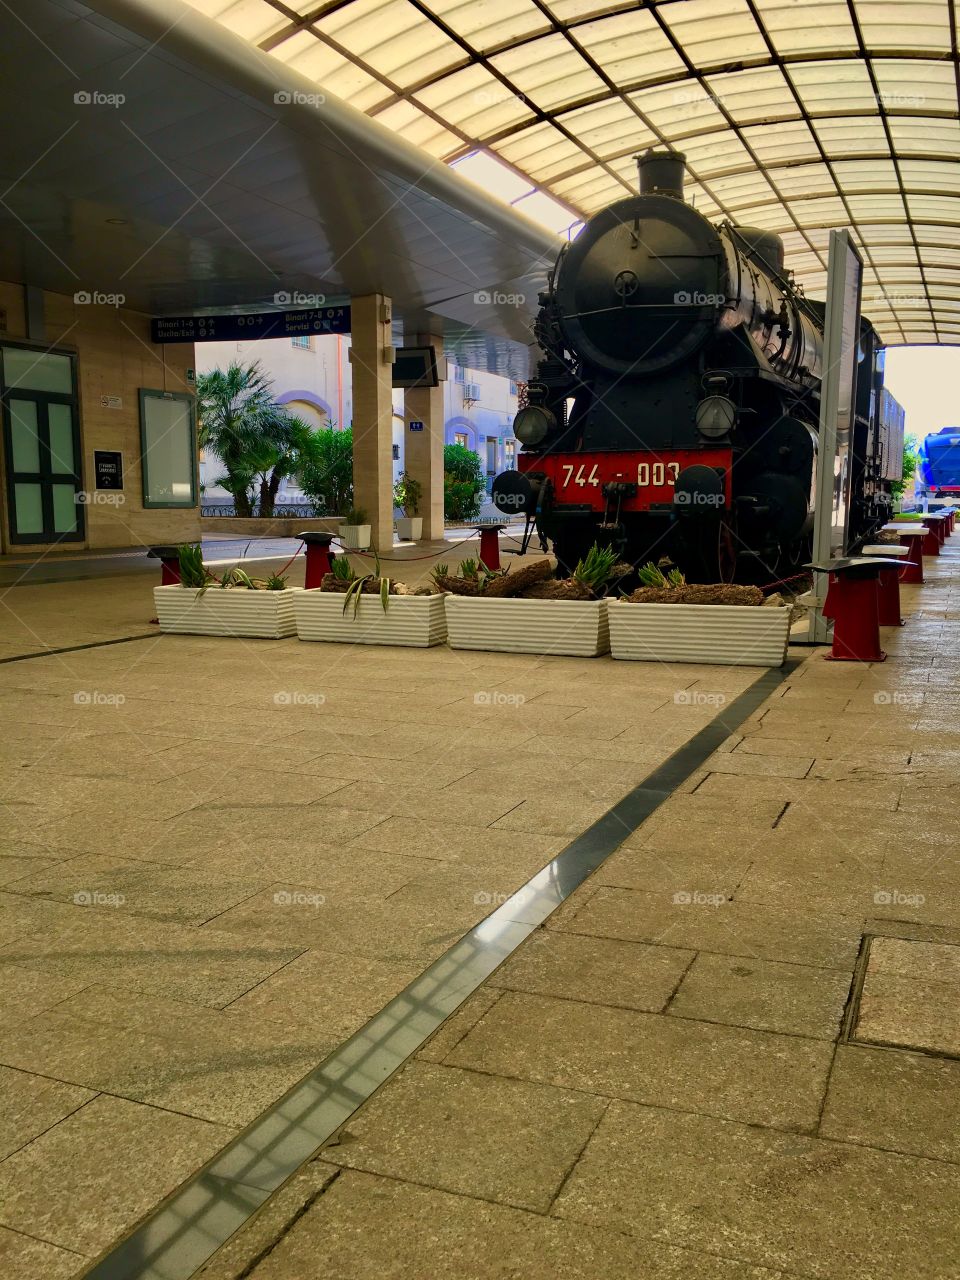 Trani station, Cagliari🚂